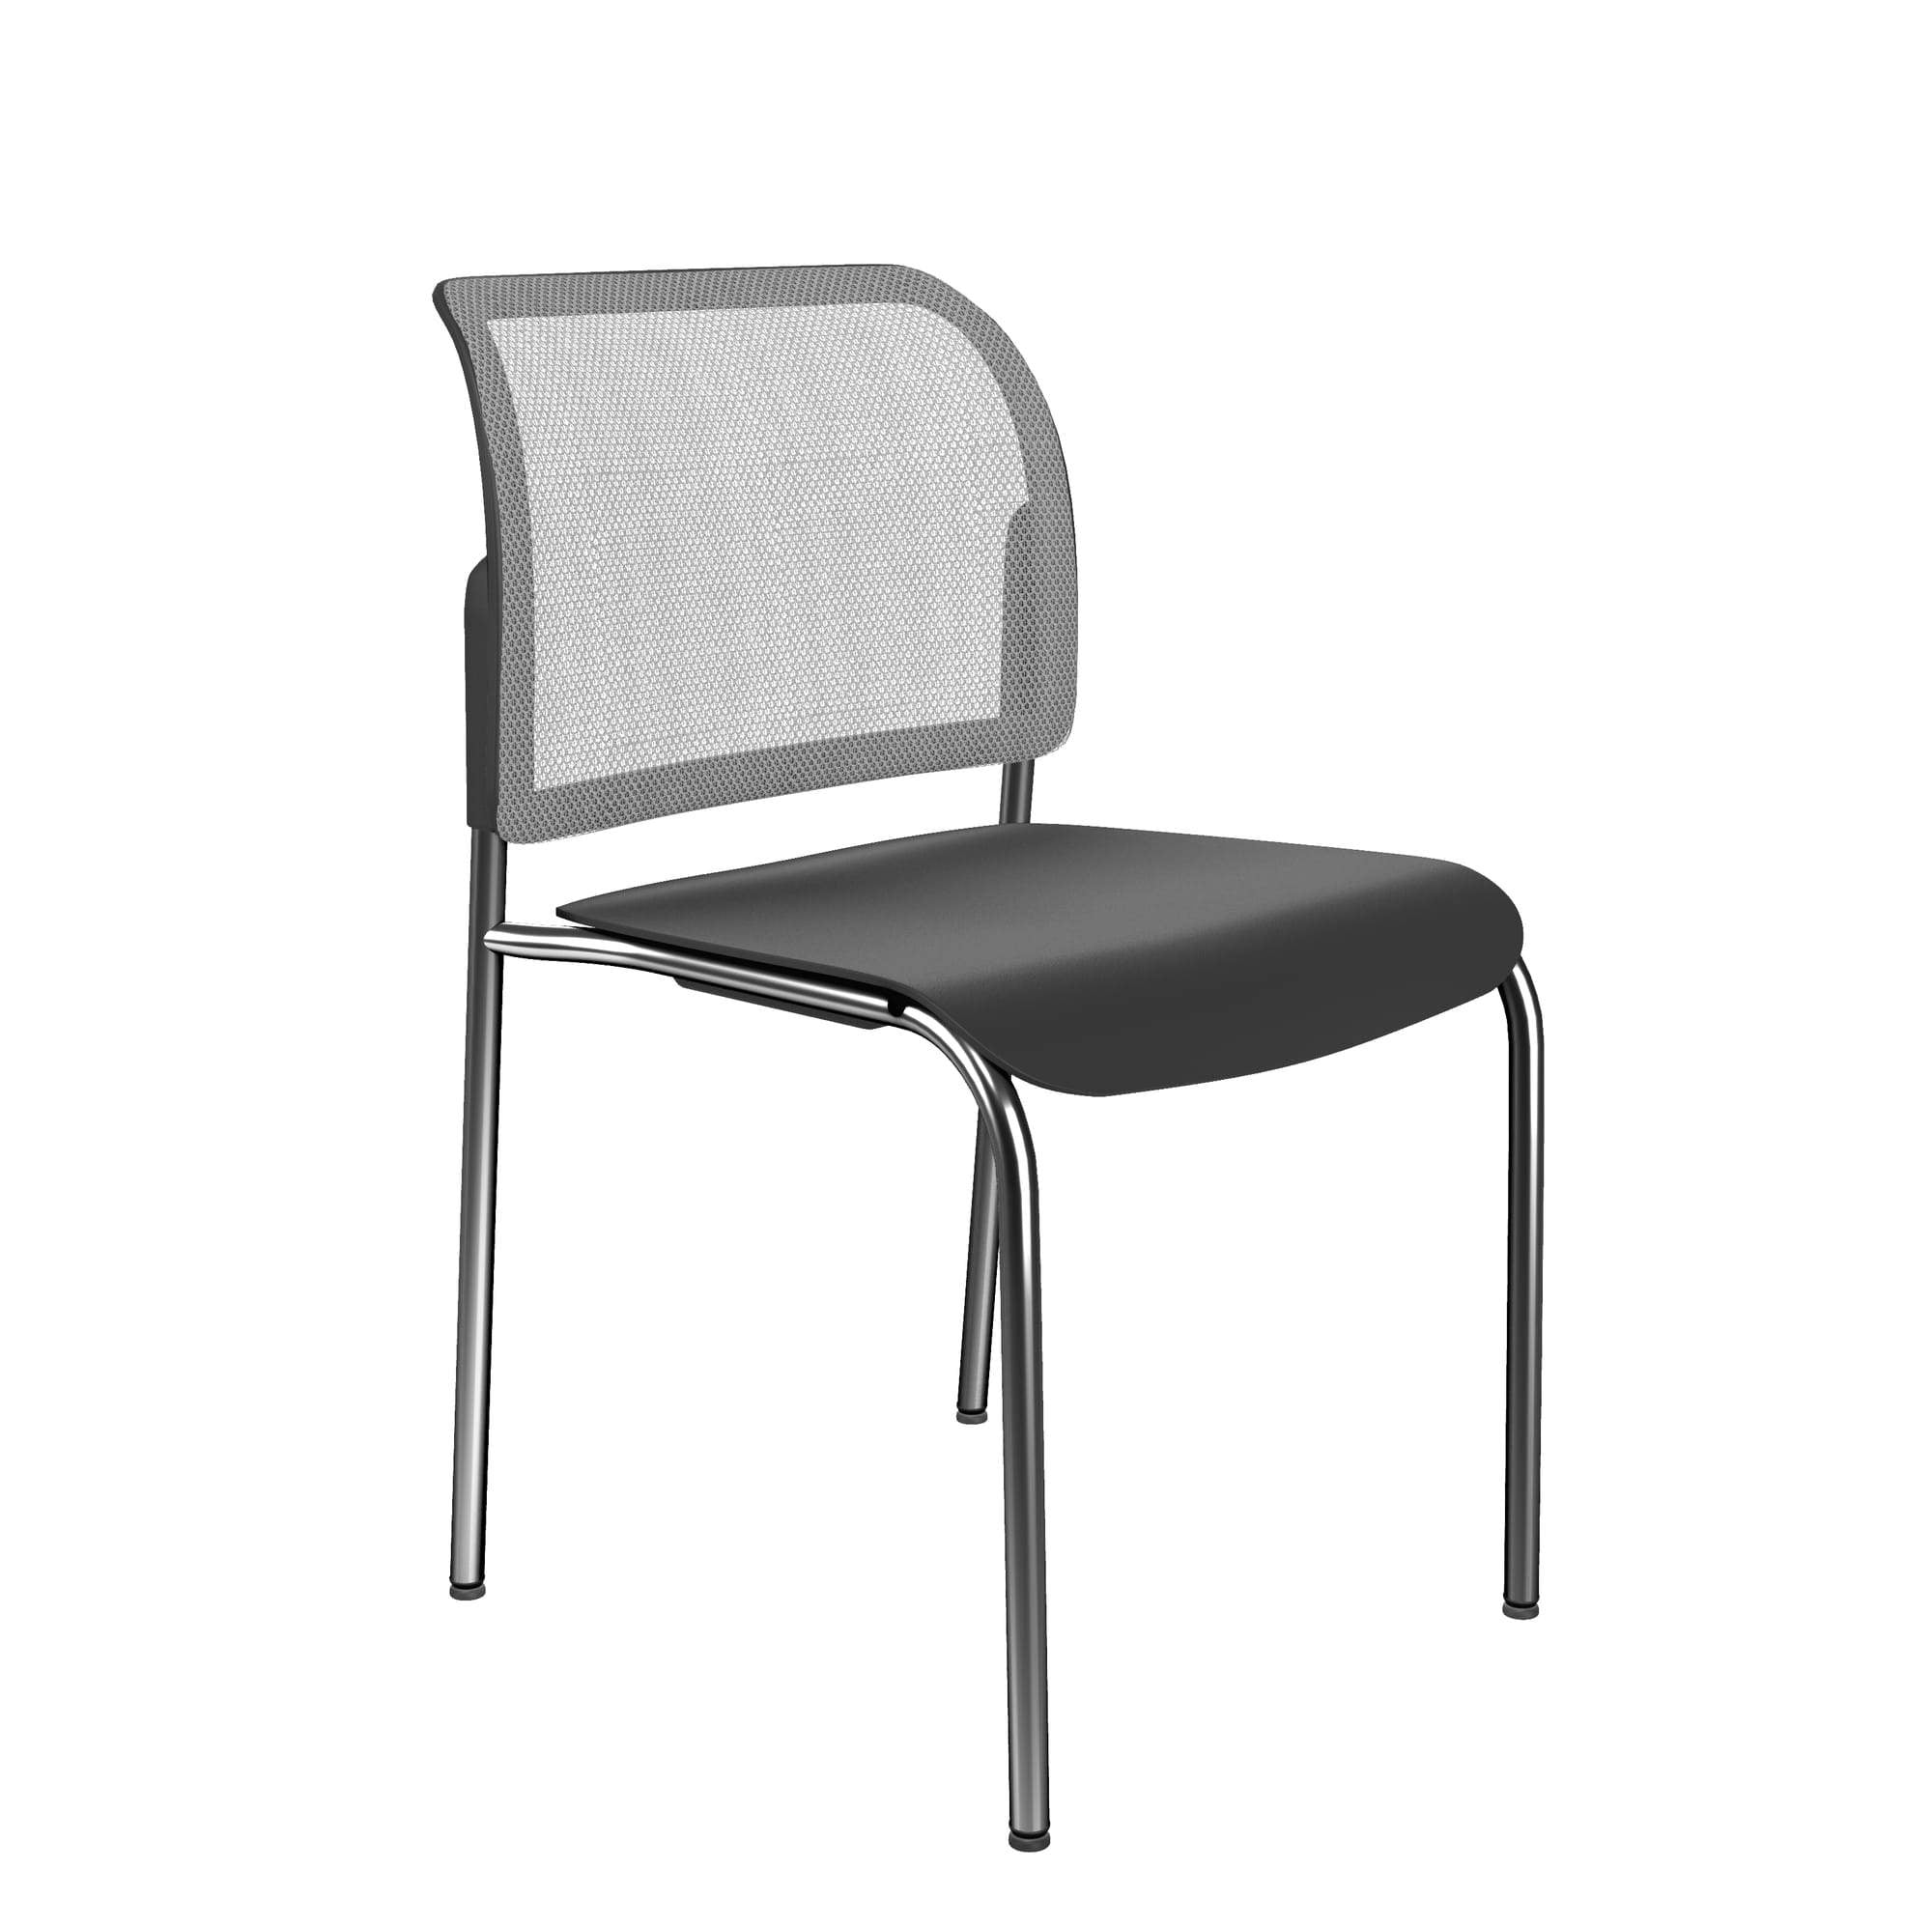 Bit Plastic Seat and Mesh Backrest Chair, 4-Legged Frame - Model 555H